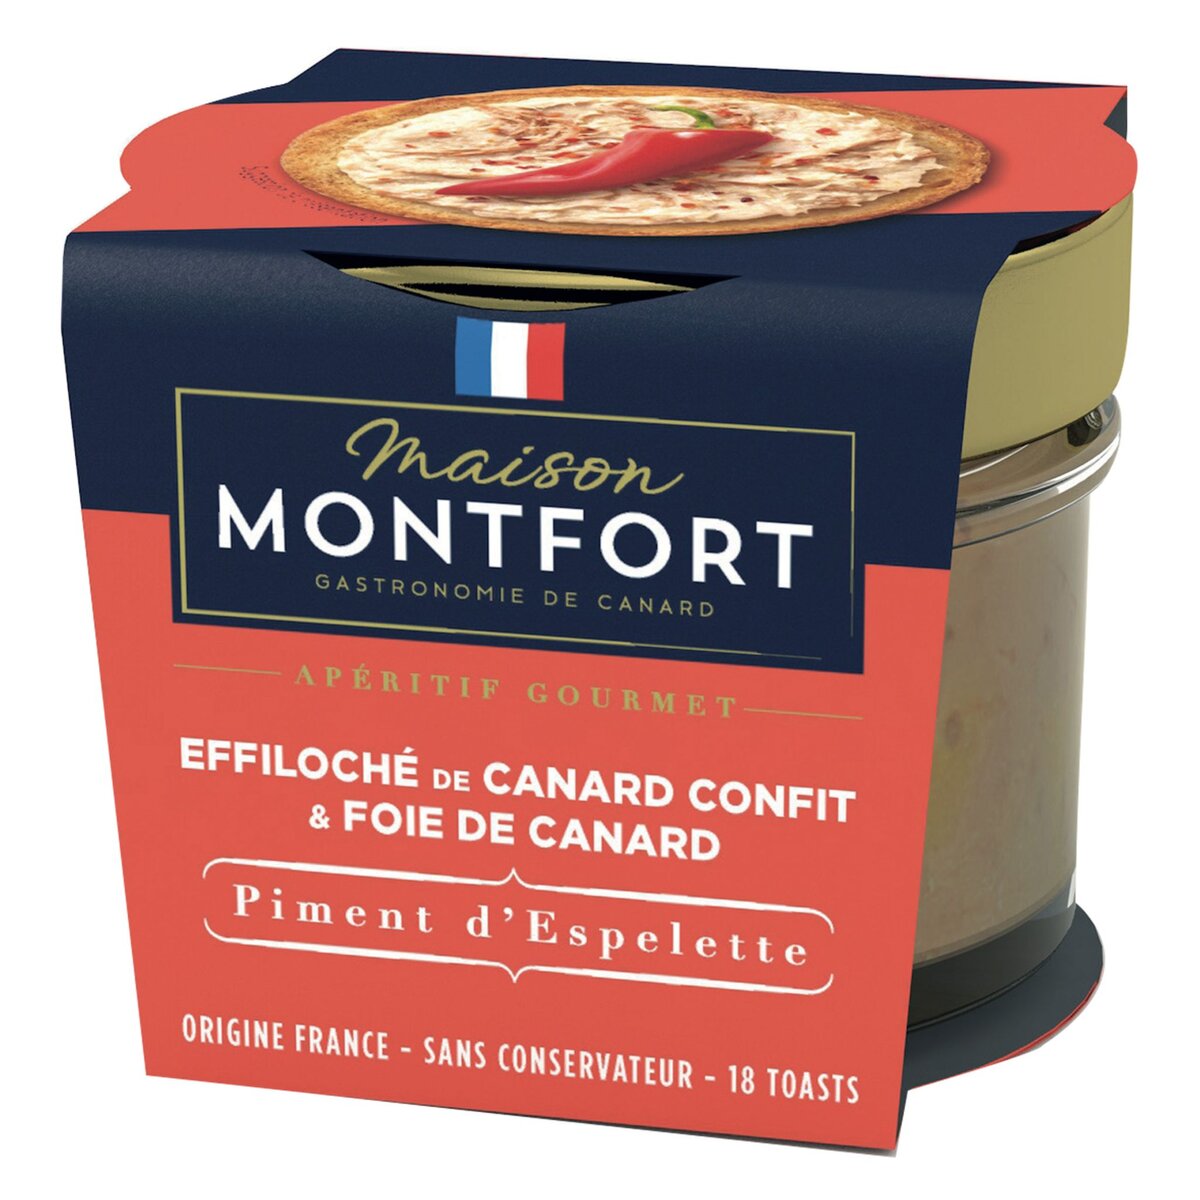 MAISON MONTFORT Effiloché de canard confit et foie de canard au piment d'espelette France 18 toasts 90g